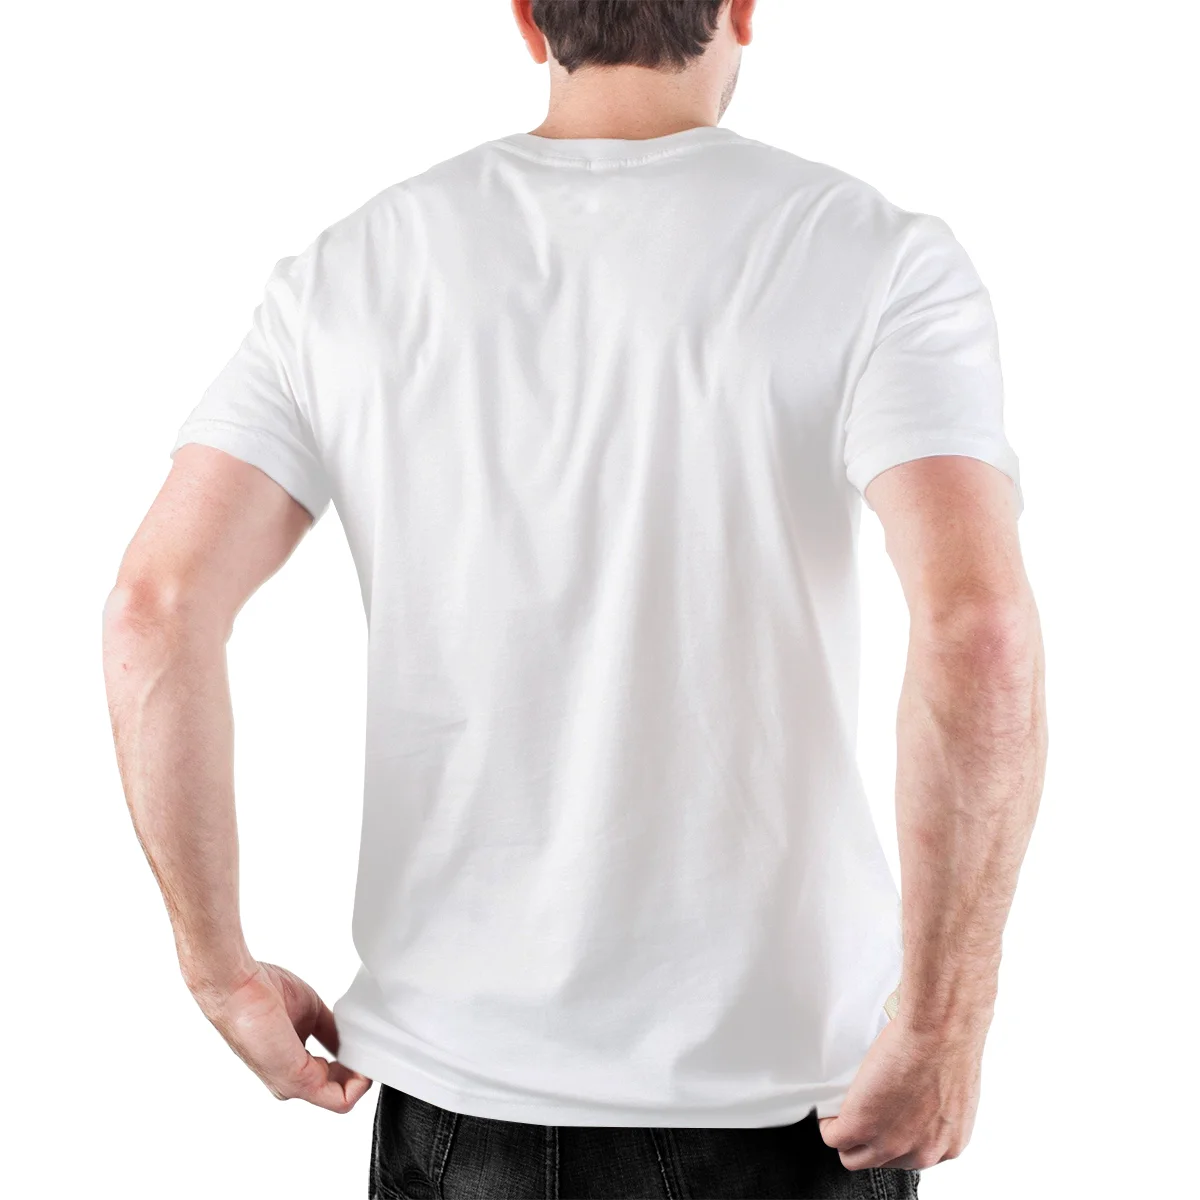 Мужская футболка с коротким рукавом и круглым вырезом из натурального хлопка -